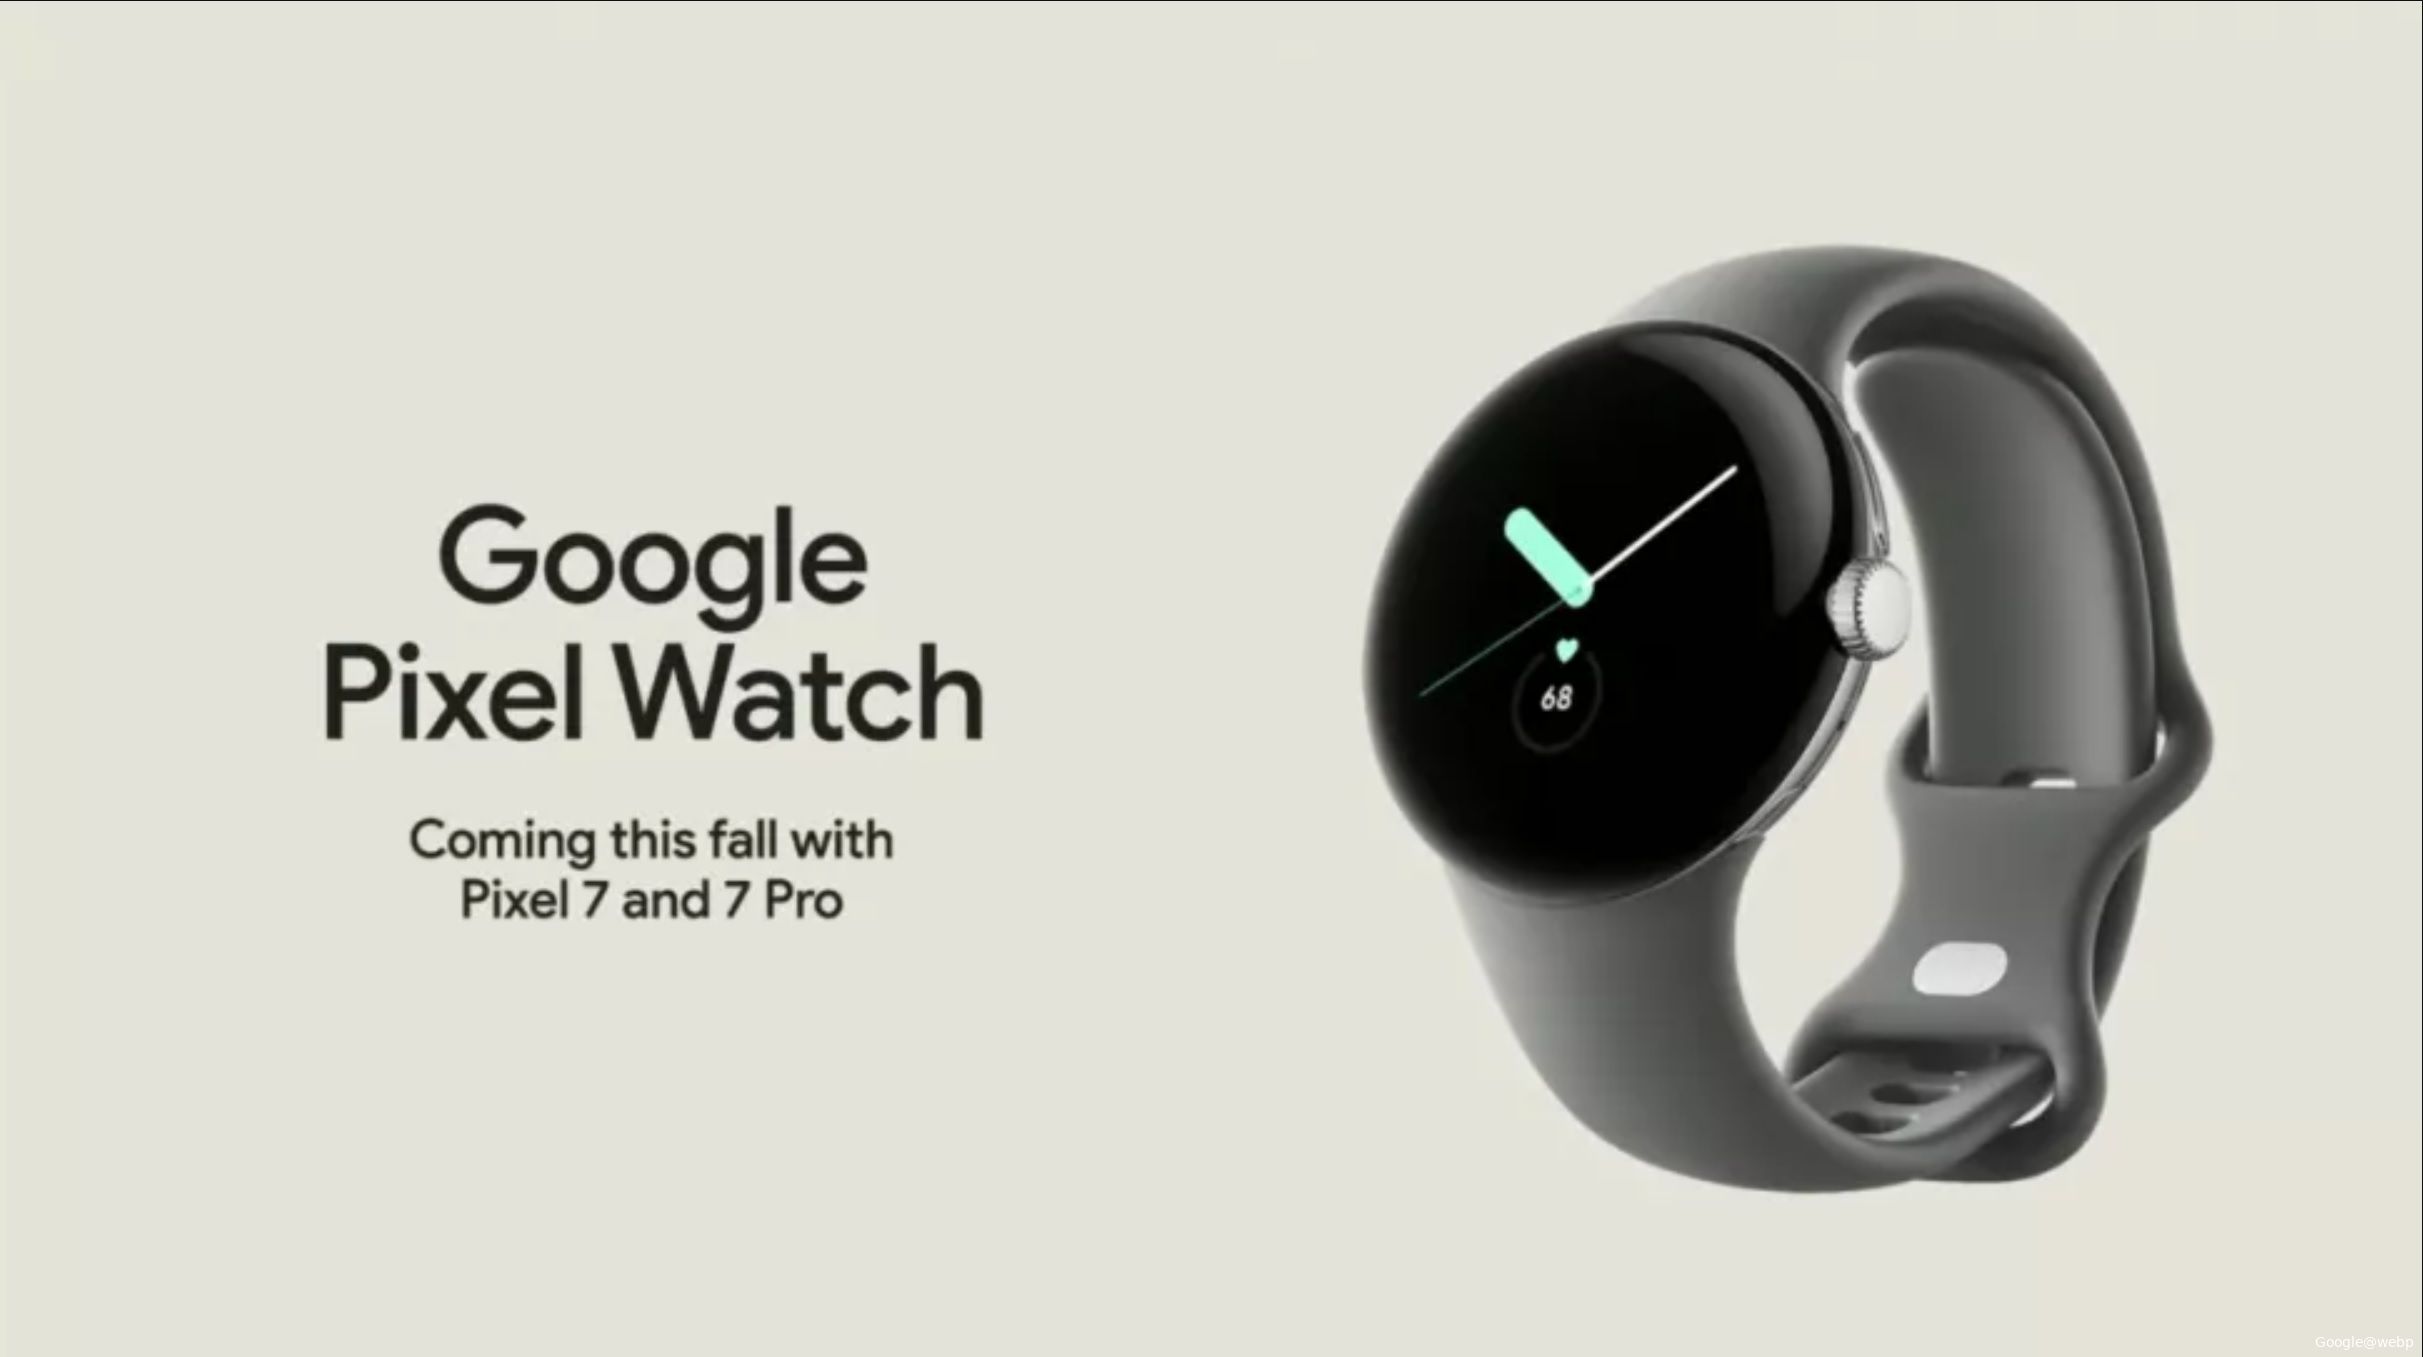 google pixel watch releasef1657895869